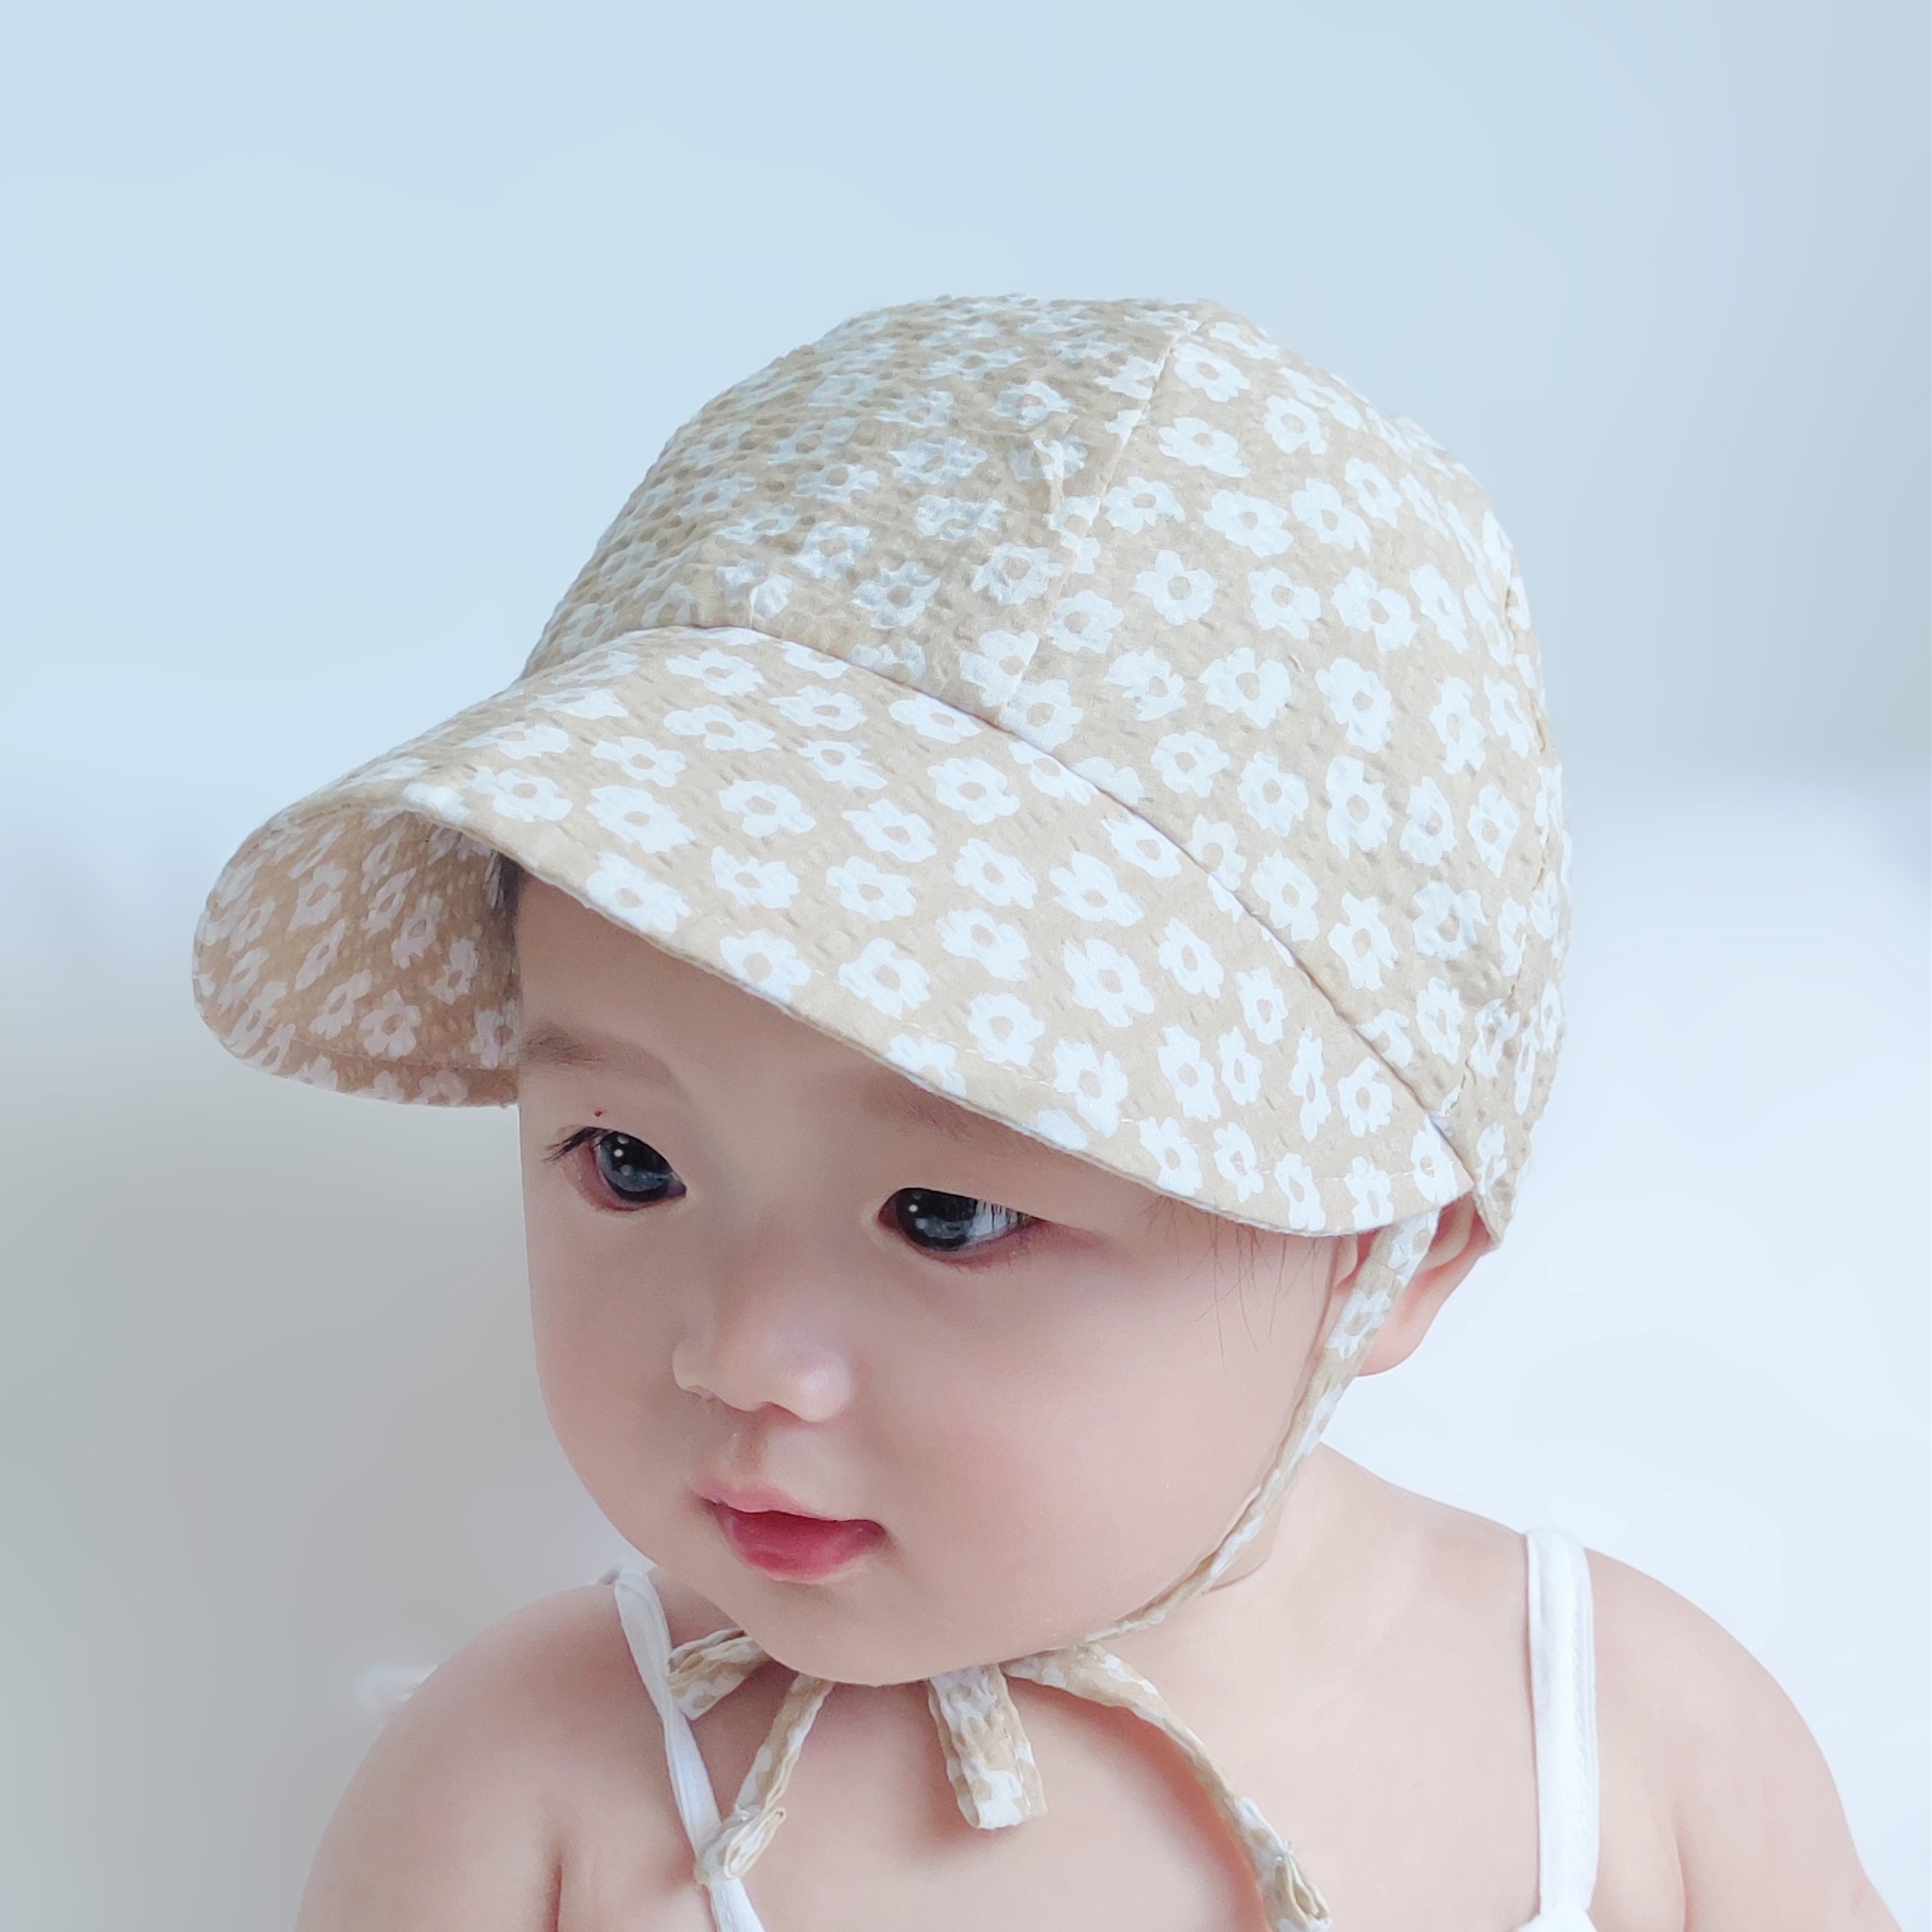 婴儿帽子儿童遮阳帽秋薄款防紫外线男新生儿宝宝防晒太阳帽